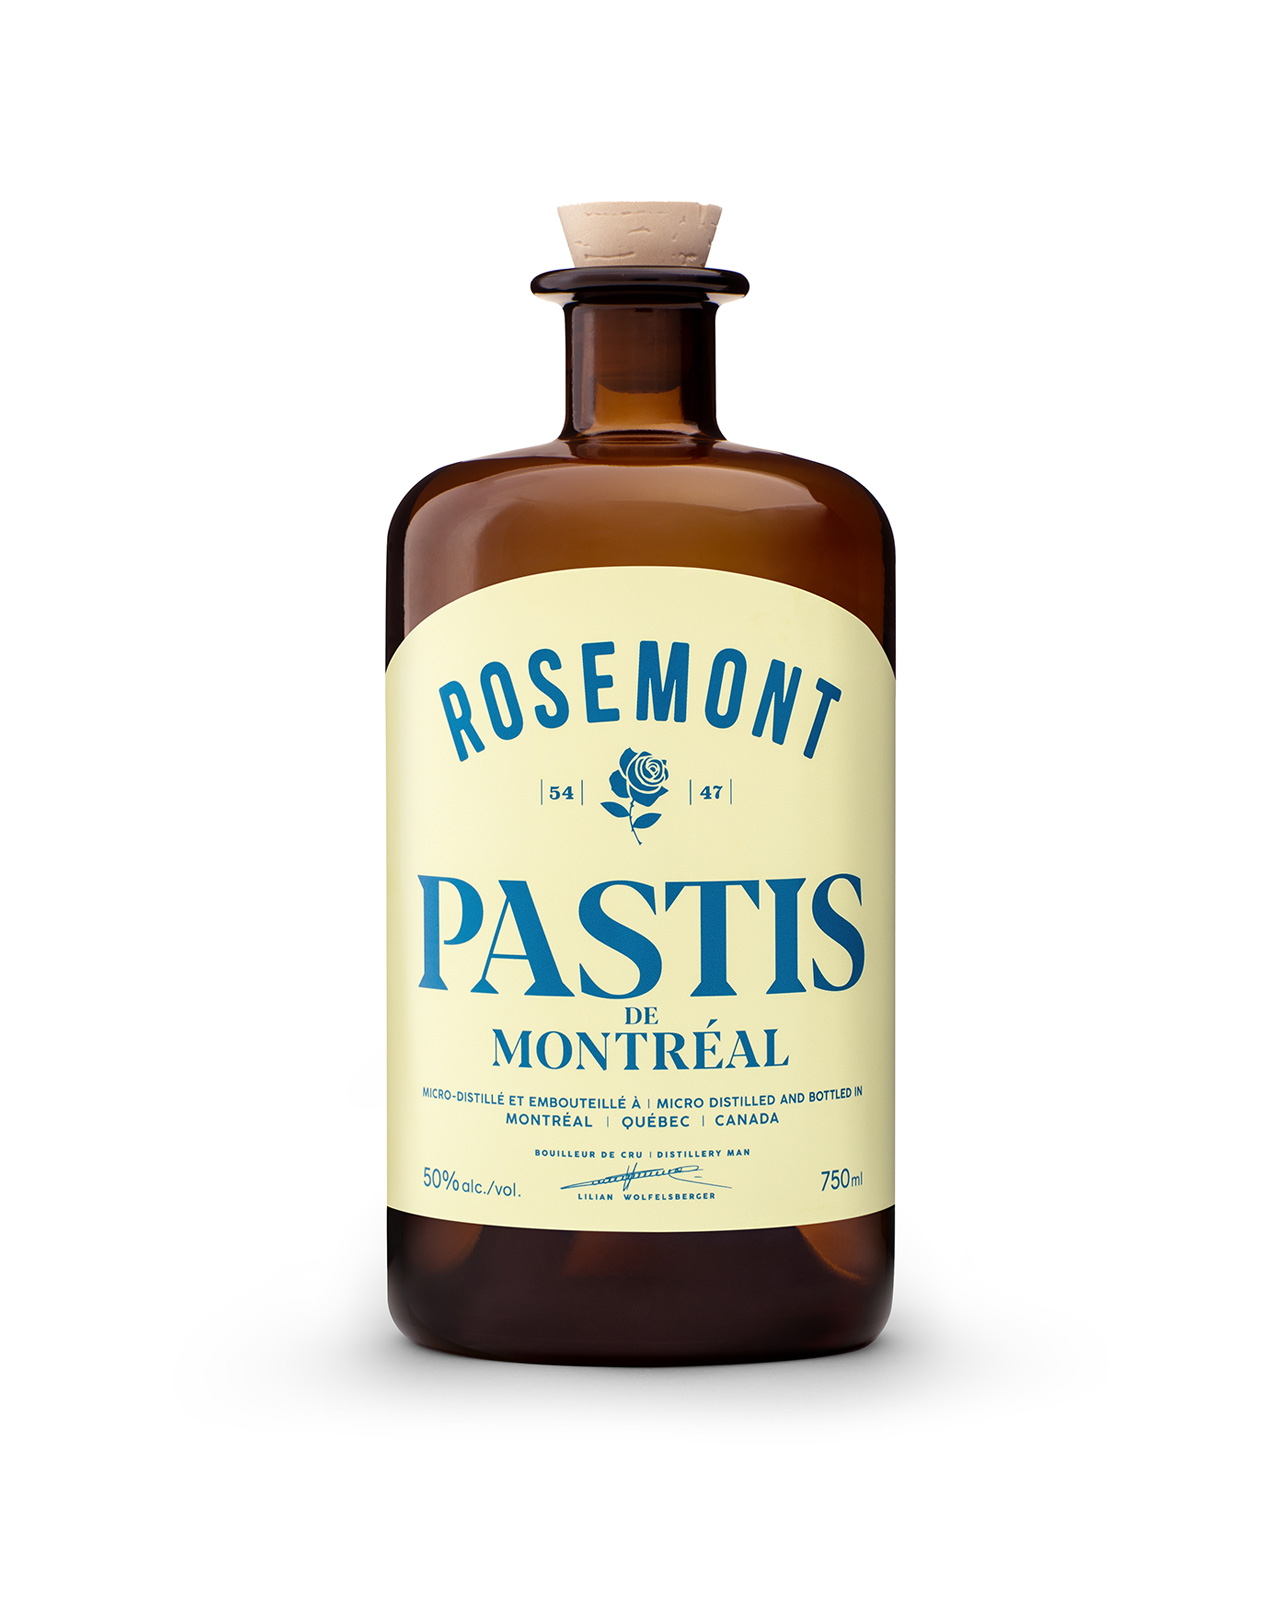 Rosemont Pastis de Montréal